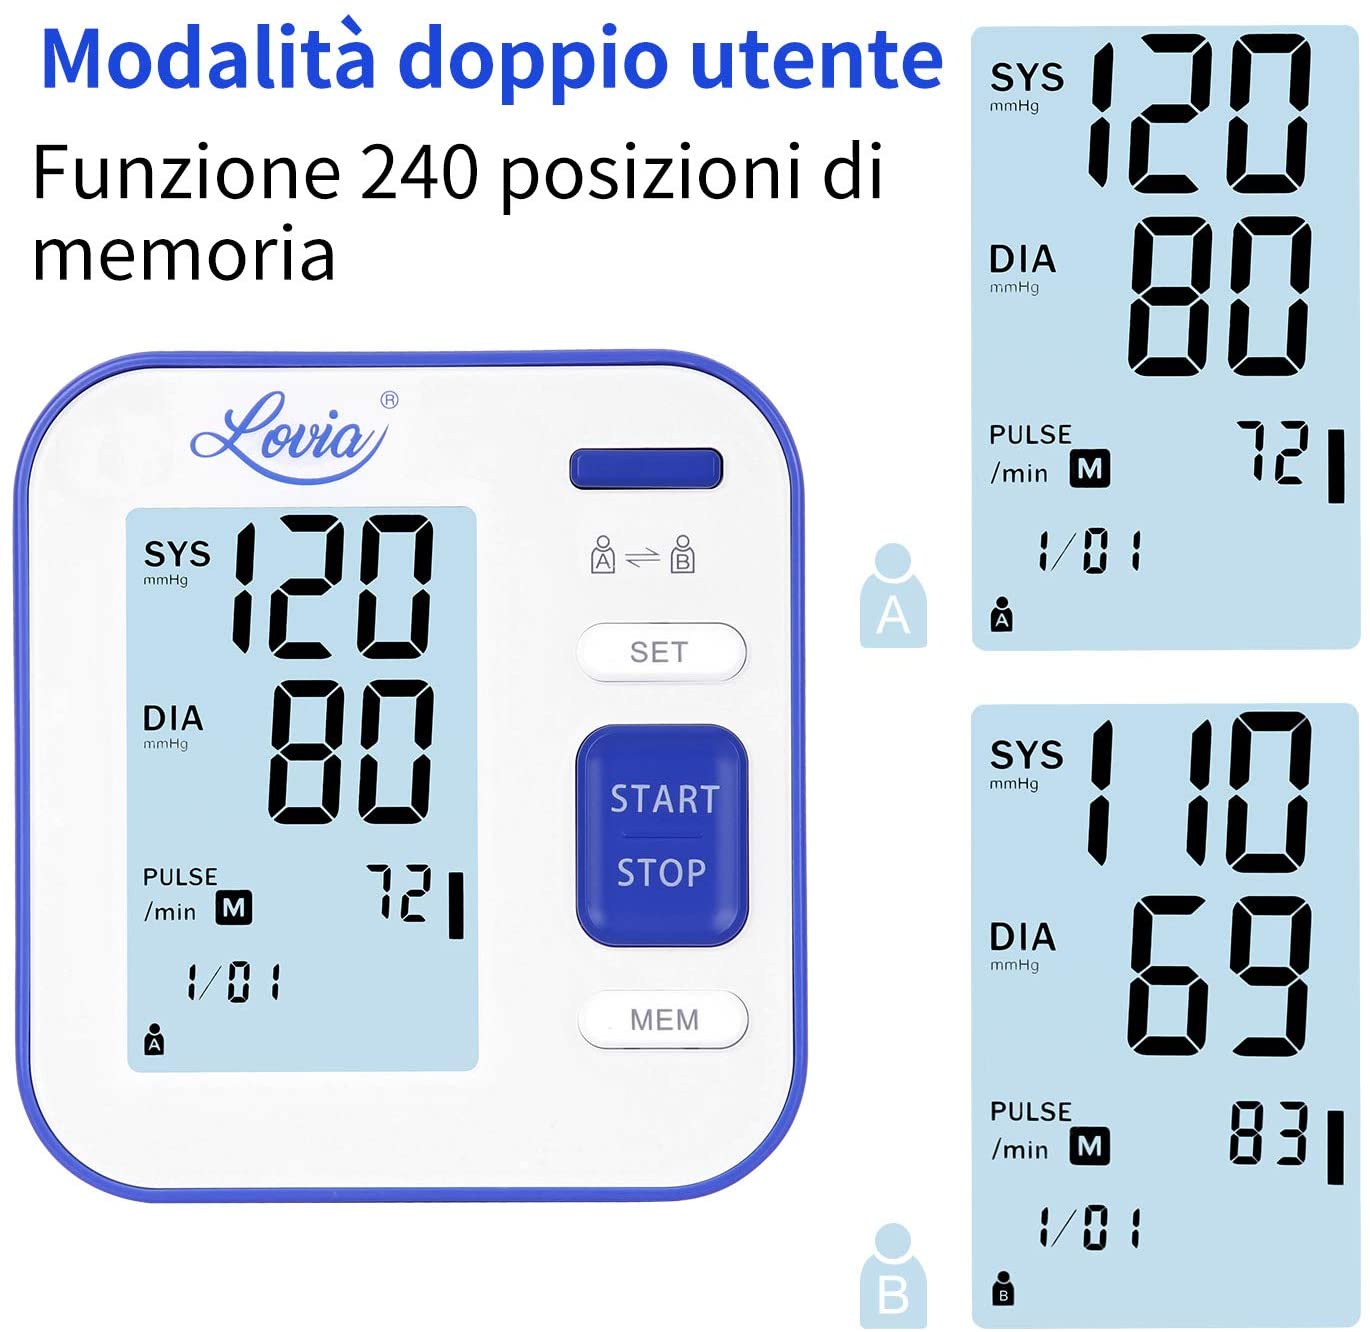 WanNing Home Monitor per la misurazione della Pressione sanguigna Precisione Lettura Rapida Braccio Automatico Monitor Digitale della Pressione sanguigna Ampio Display LCD